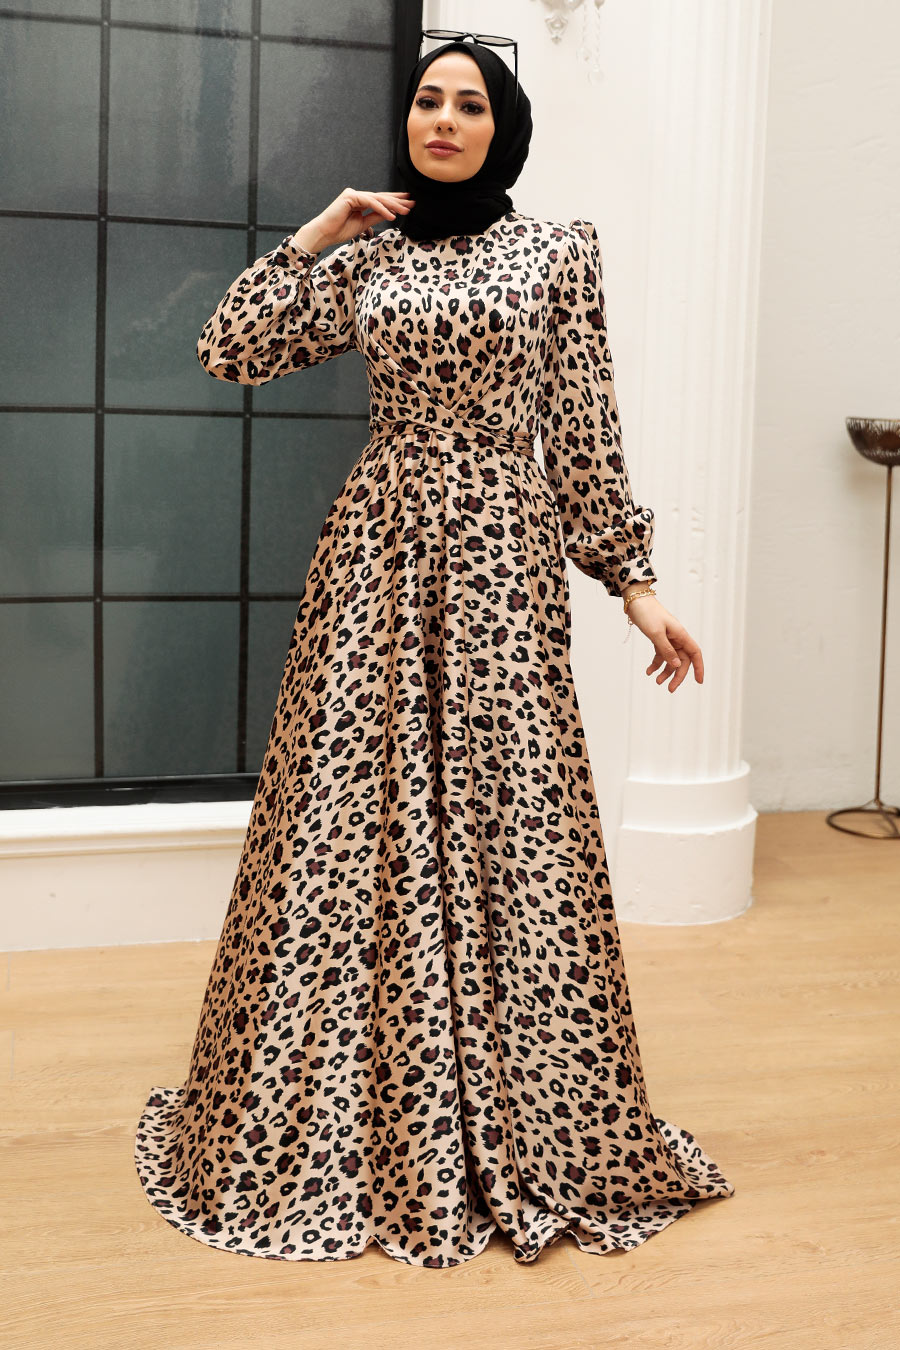 New Season Leopard Women's Long Muslim Dress Modest Fashion